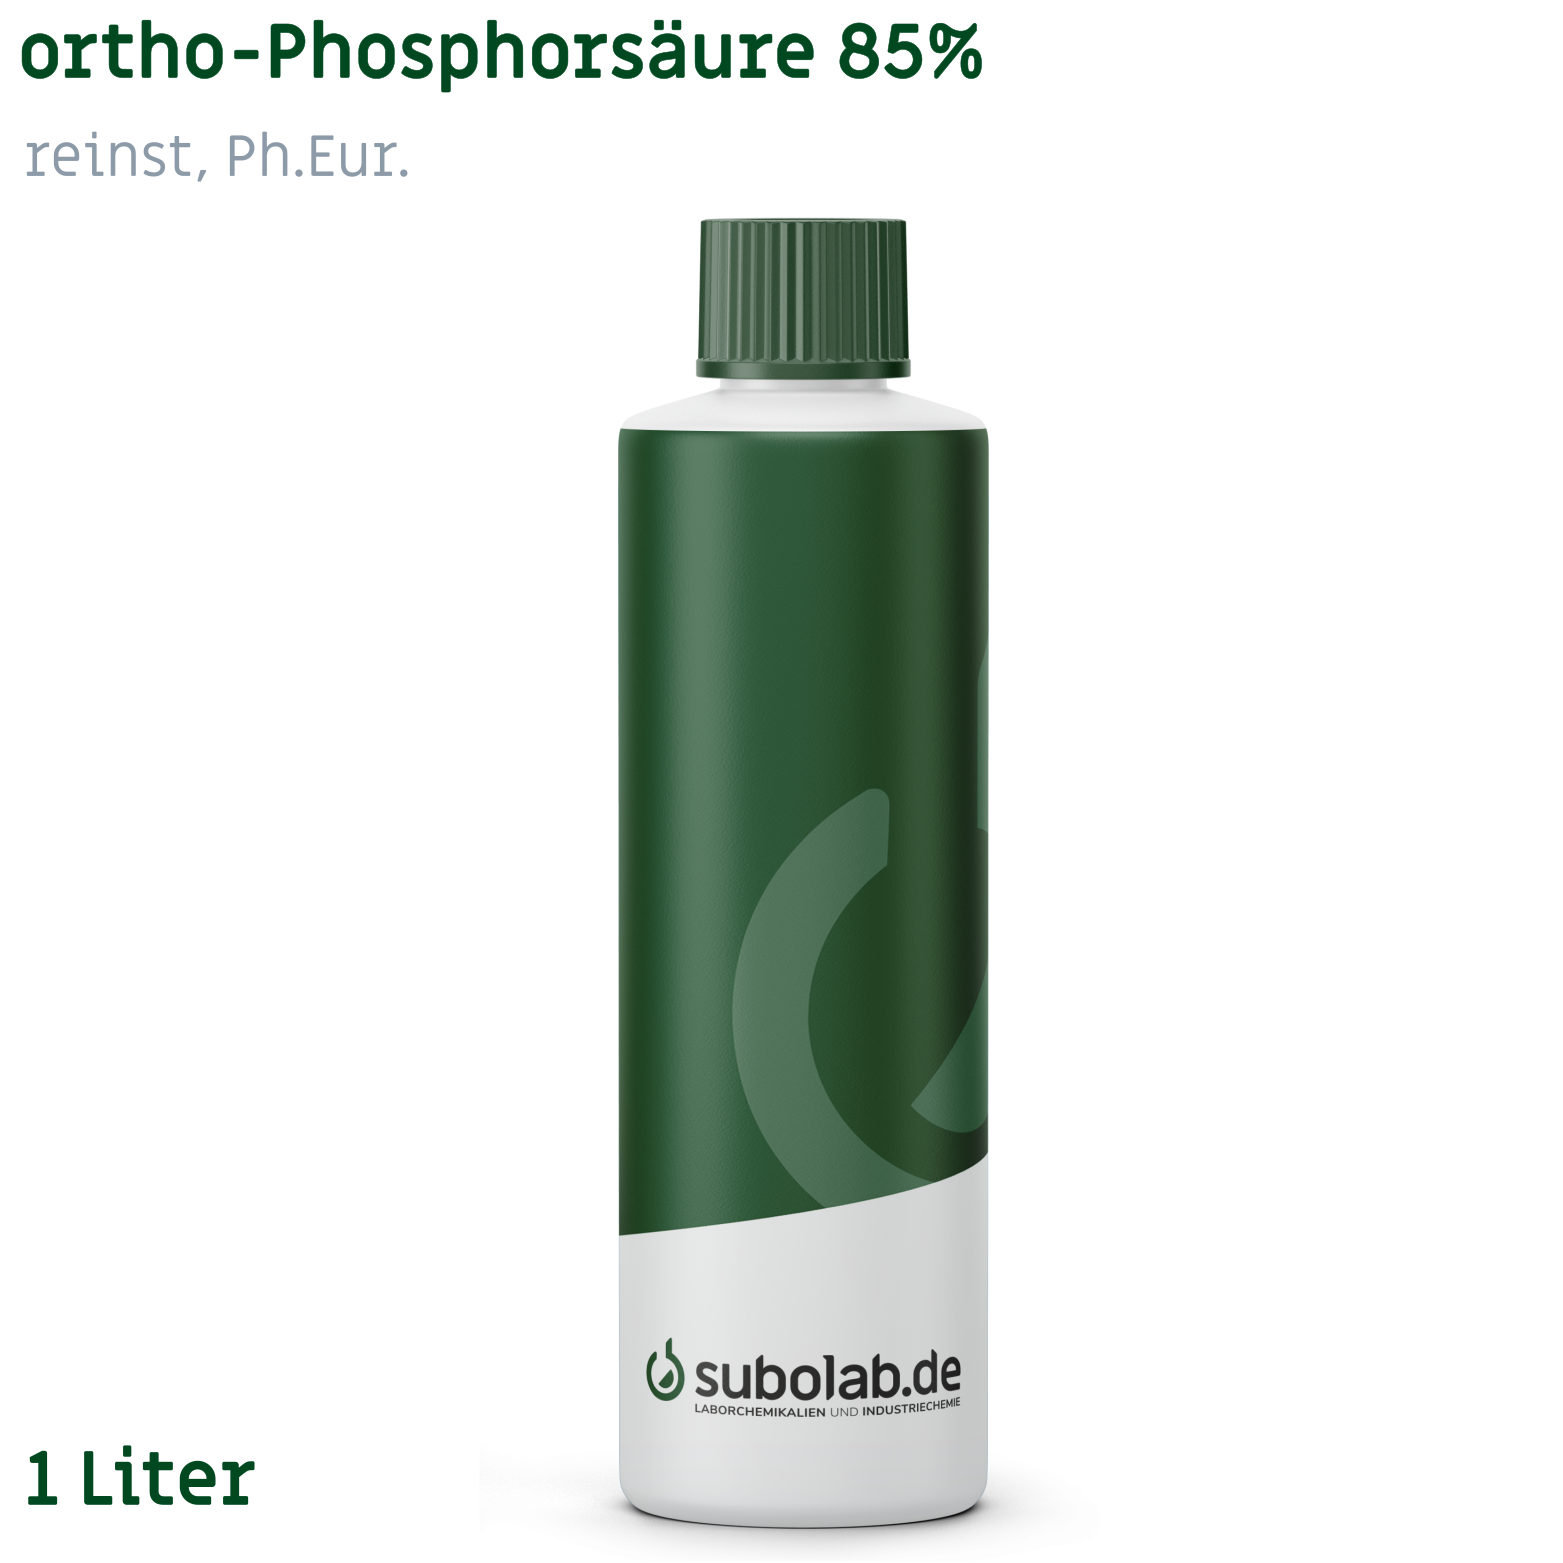 Bild von ortho-Phosphorsäure 85% reinst, Ph.Eur. (1 Liter)